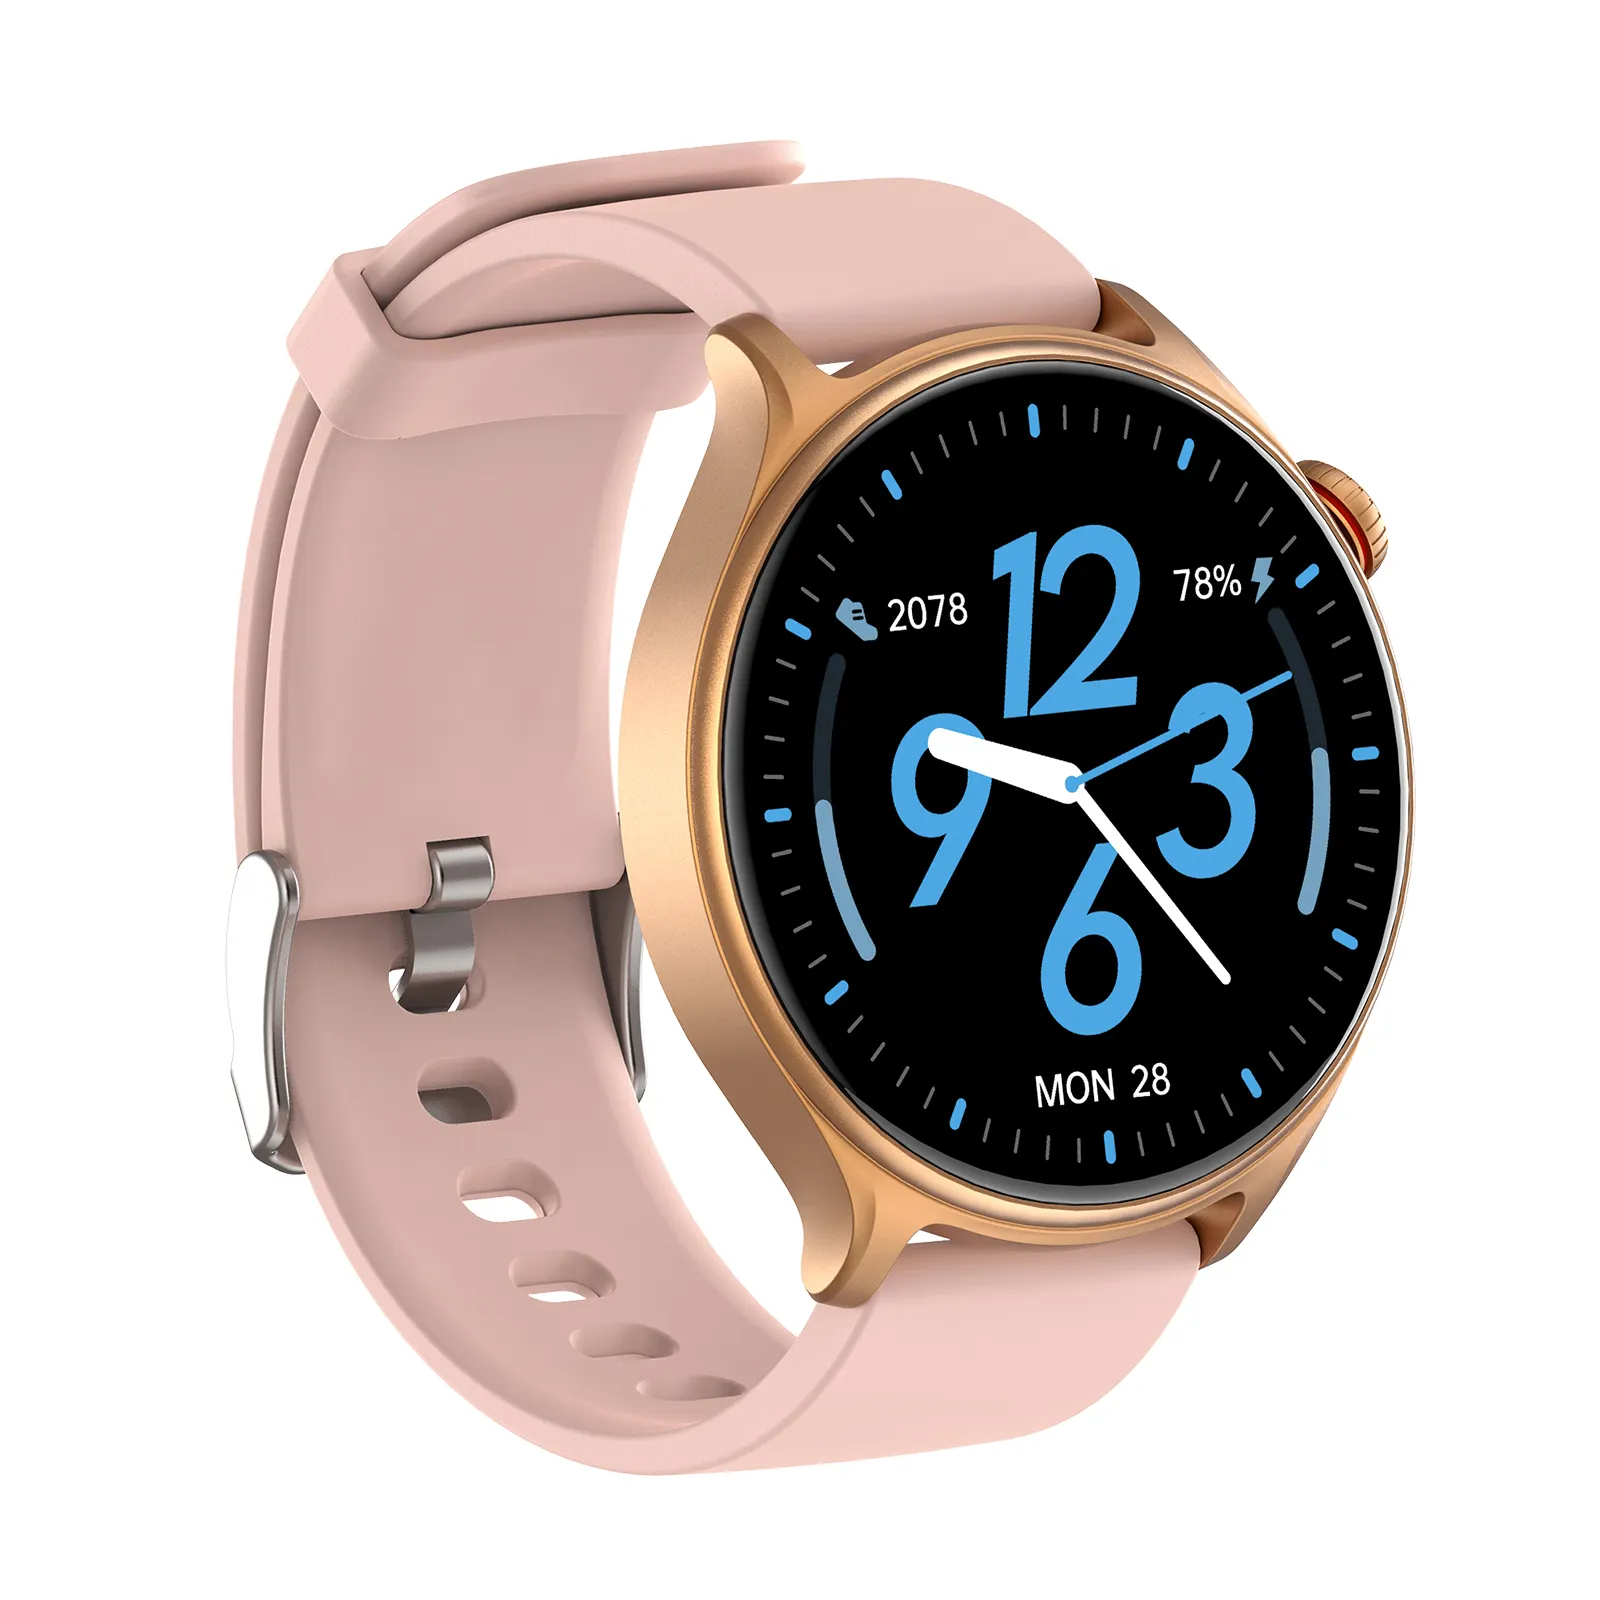 Starmax Runmefit חדש GTR2 שעון חכם ספורט נשים שעון מתוק שעון צמיד שעון גשש עיצוב